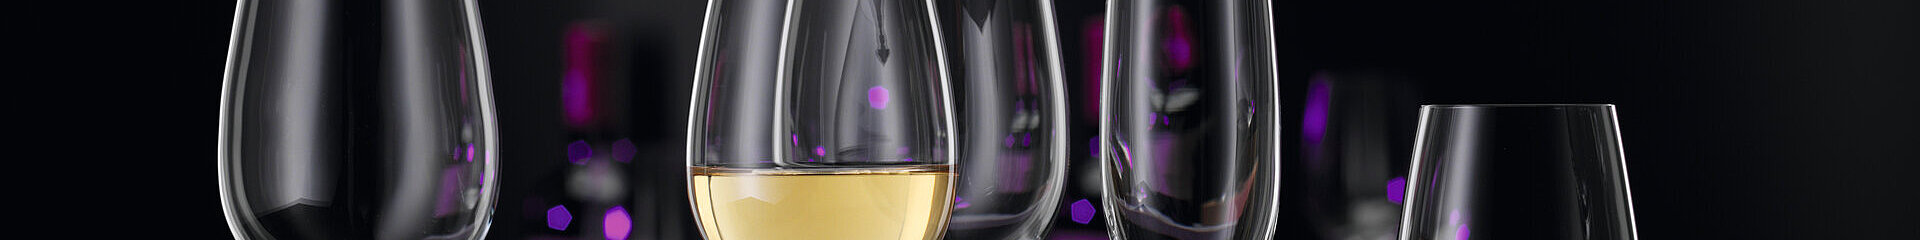 Čaša za crveno vino, Winelovers - Spiegelau